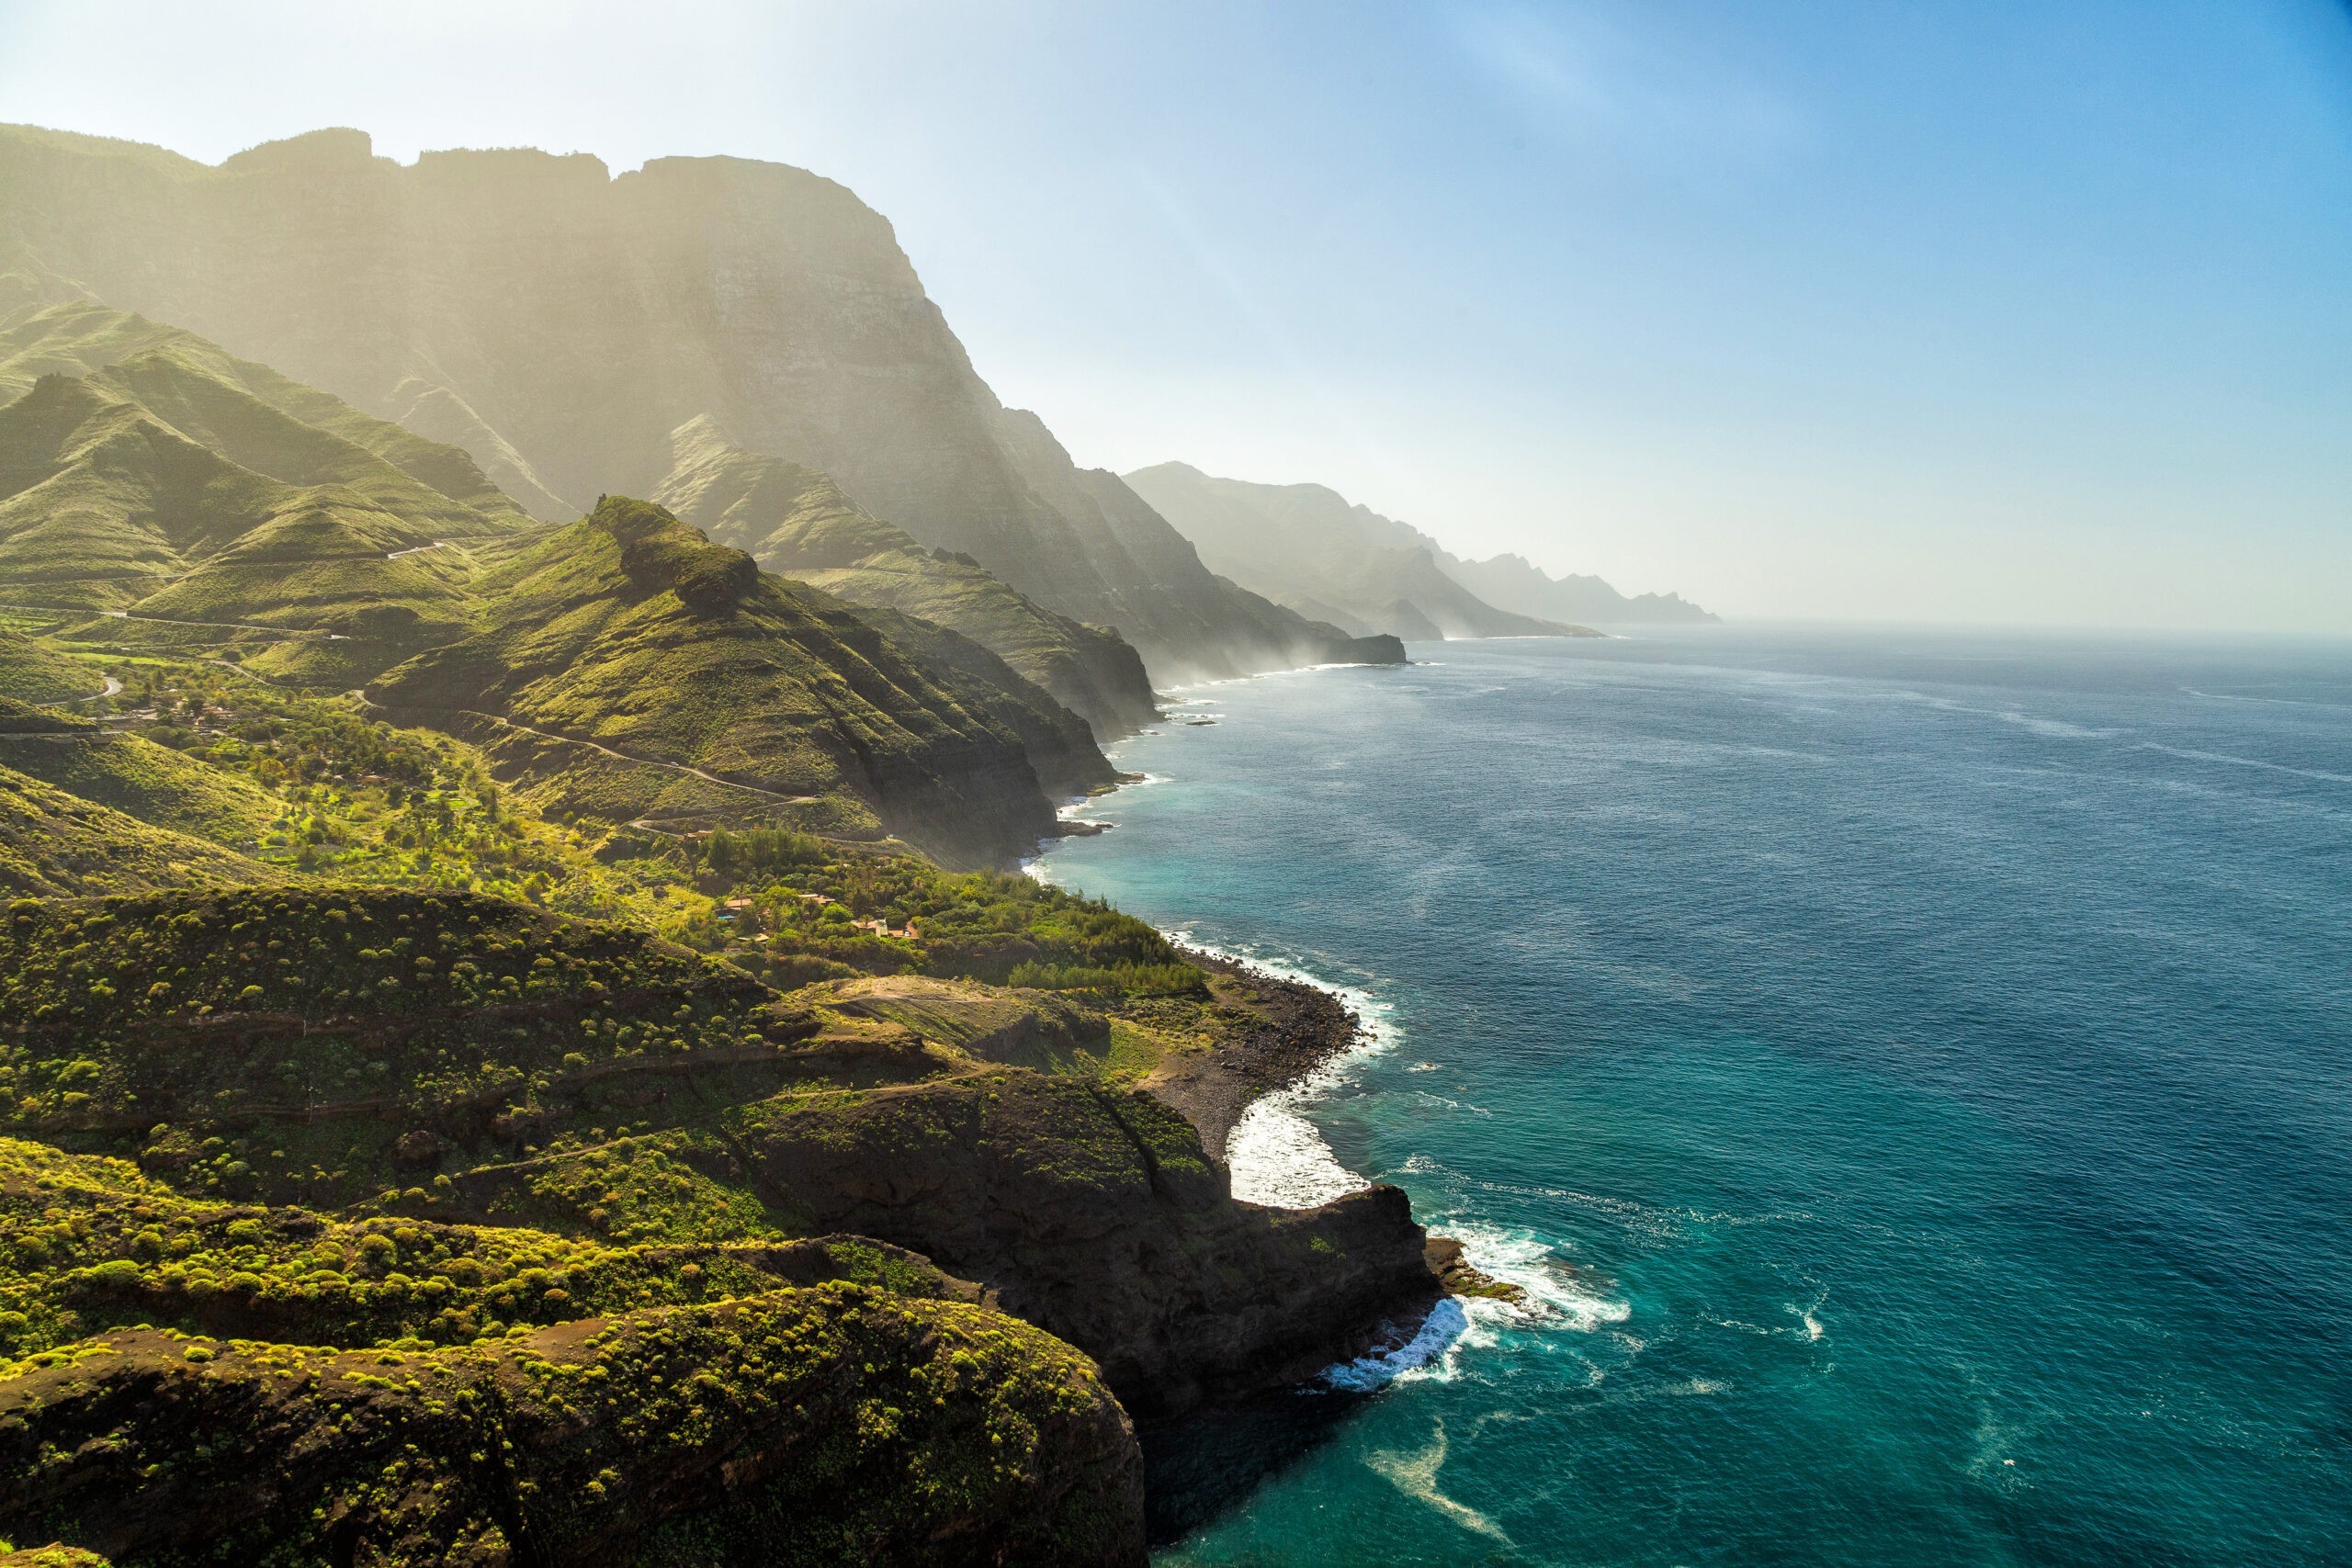 Zielone wzgórza i klify Parku Przyrodniczego Tamadaba na wybrzeżu oceanu w pobliżu Agaete, Las Palmas, wyspa Gran Canaria, Hiszpania, licencja: shutterstock/By Vaflya